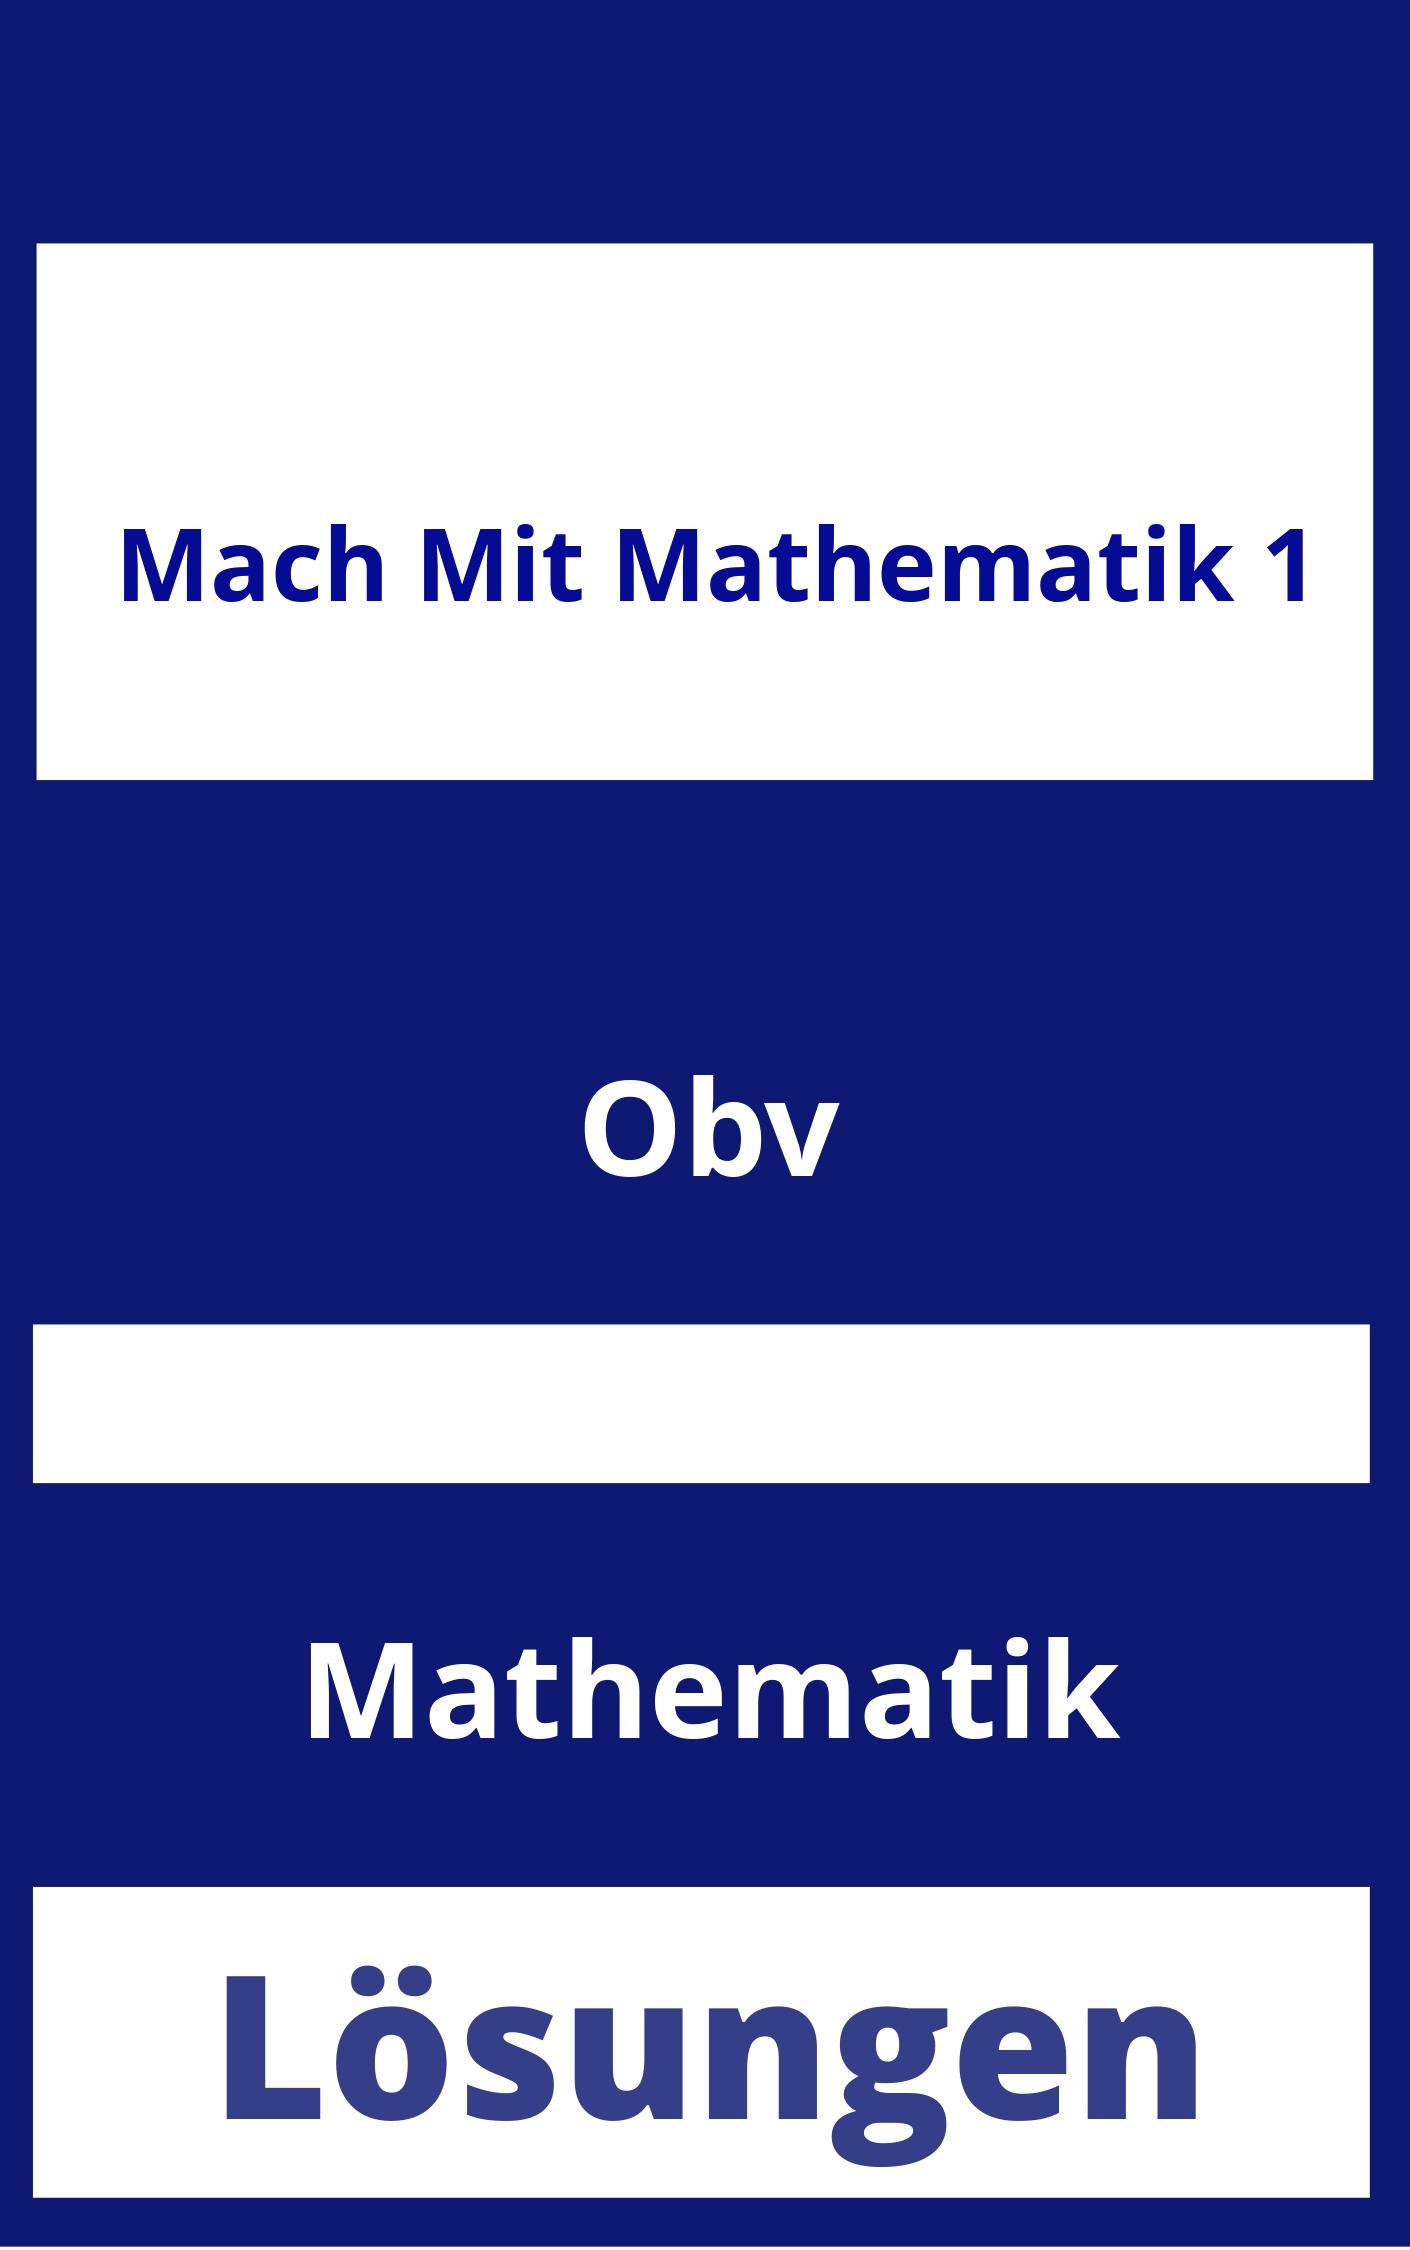 Mach Mit Mathematik 1 Lösungen PDF